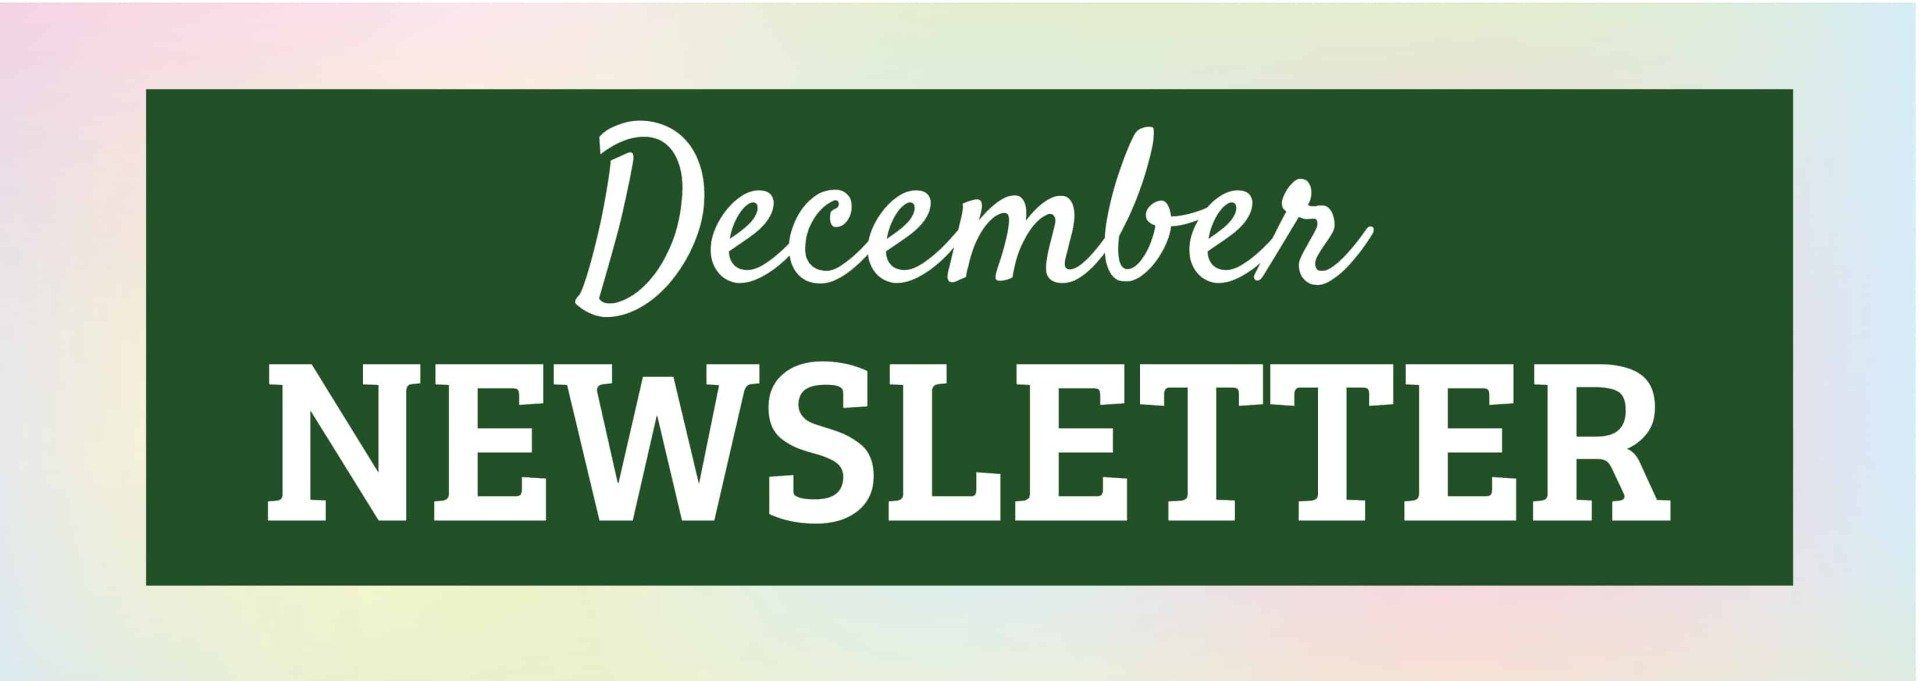 December 2021 Newsletter